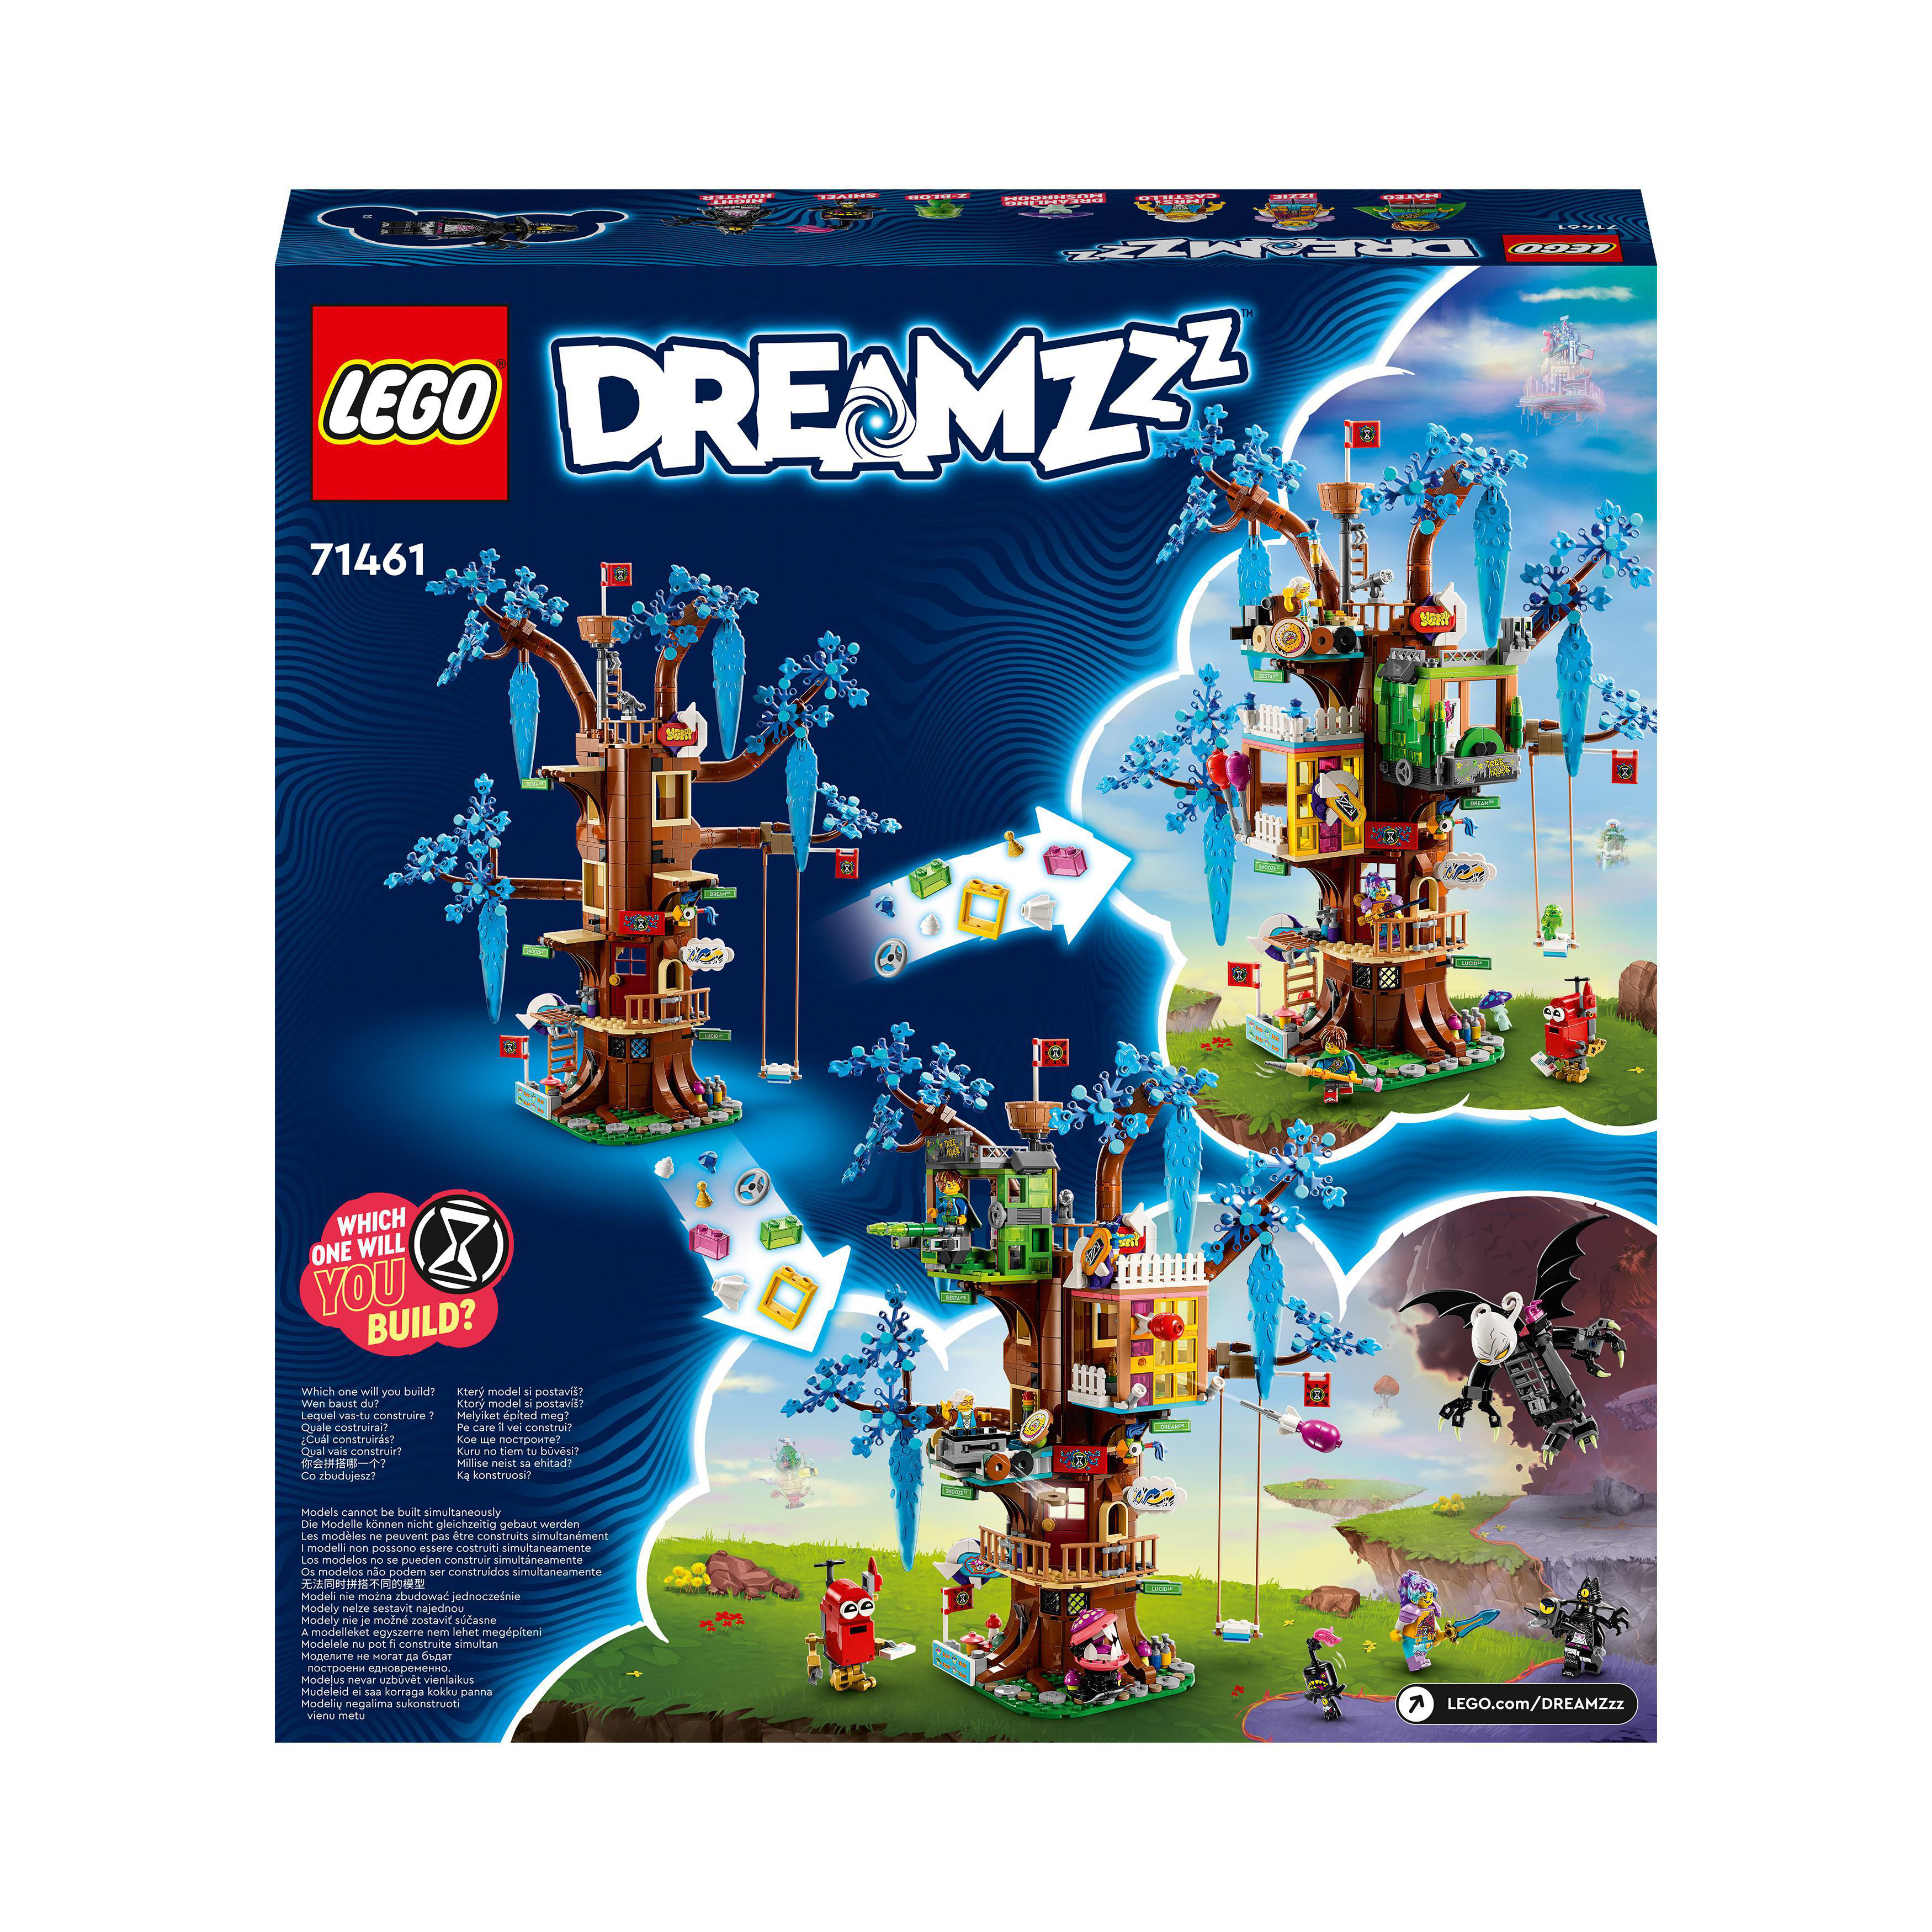 LEGO DREAMZzz 71461 Bausatz, Fantastisches Baumhaus Mehrfarbig